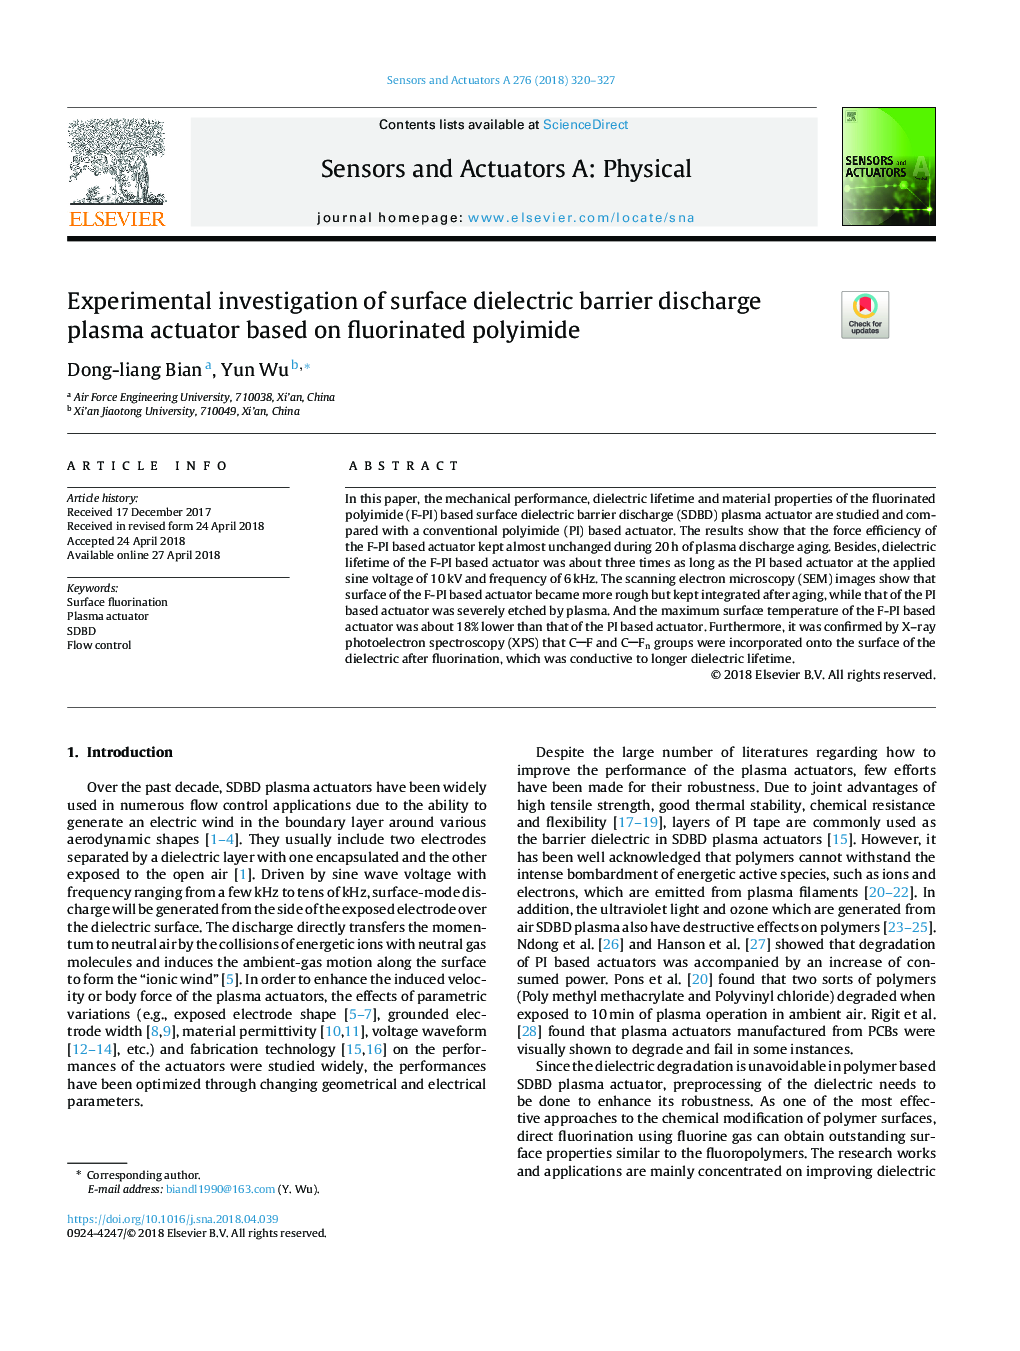 تحقیق تجربی بر اساس پلاسمای خروجی مانع دی اکسیدکربن بر پایه فلوئورید شده با پلییمید 